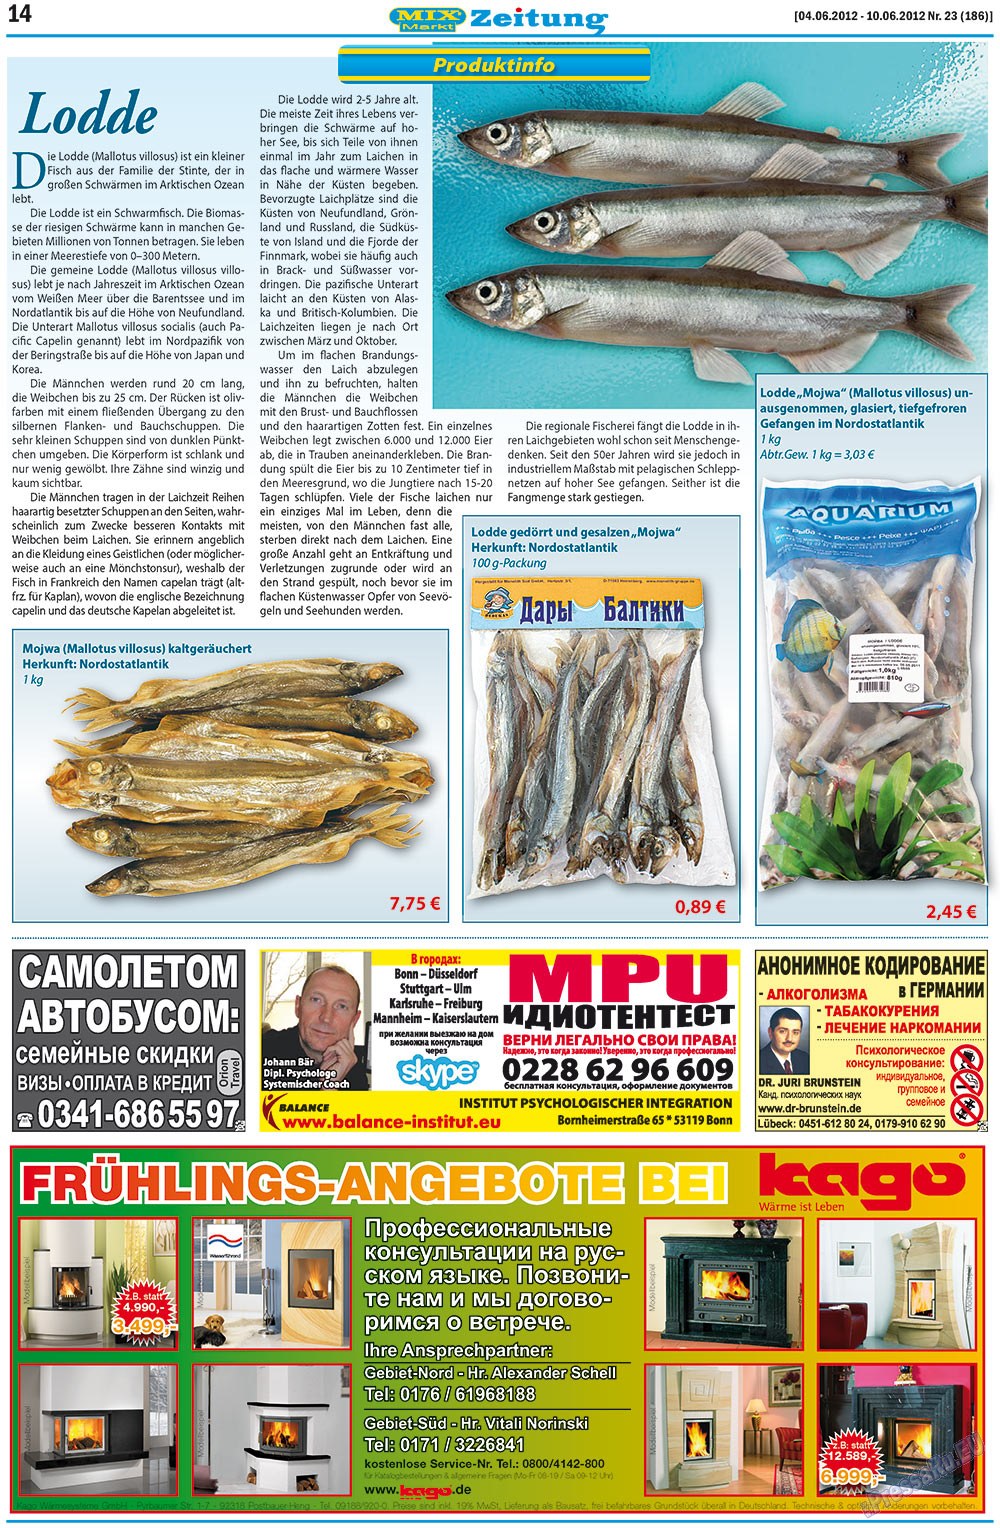 MIX-Markt Zeitung (газета). 2012 год, номер 23, стр. 14